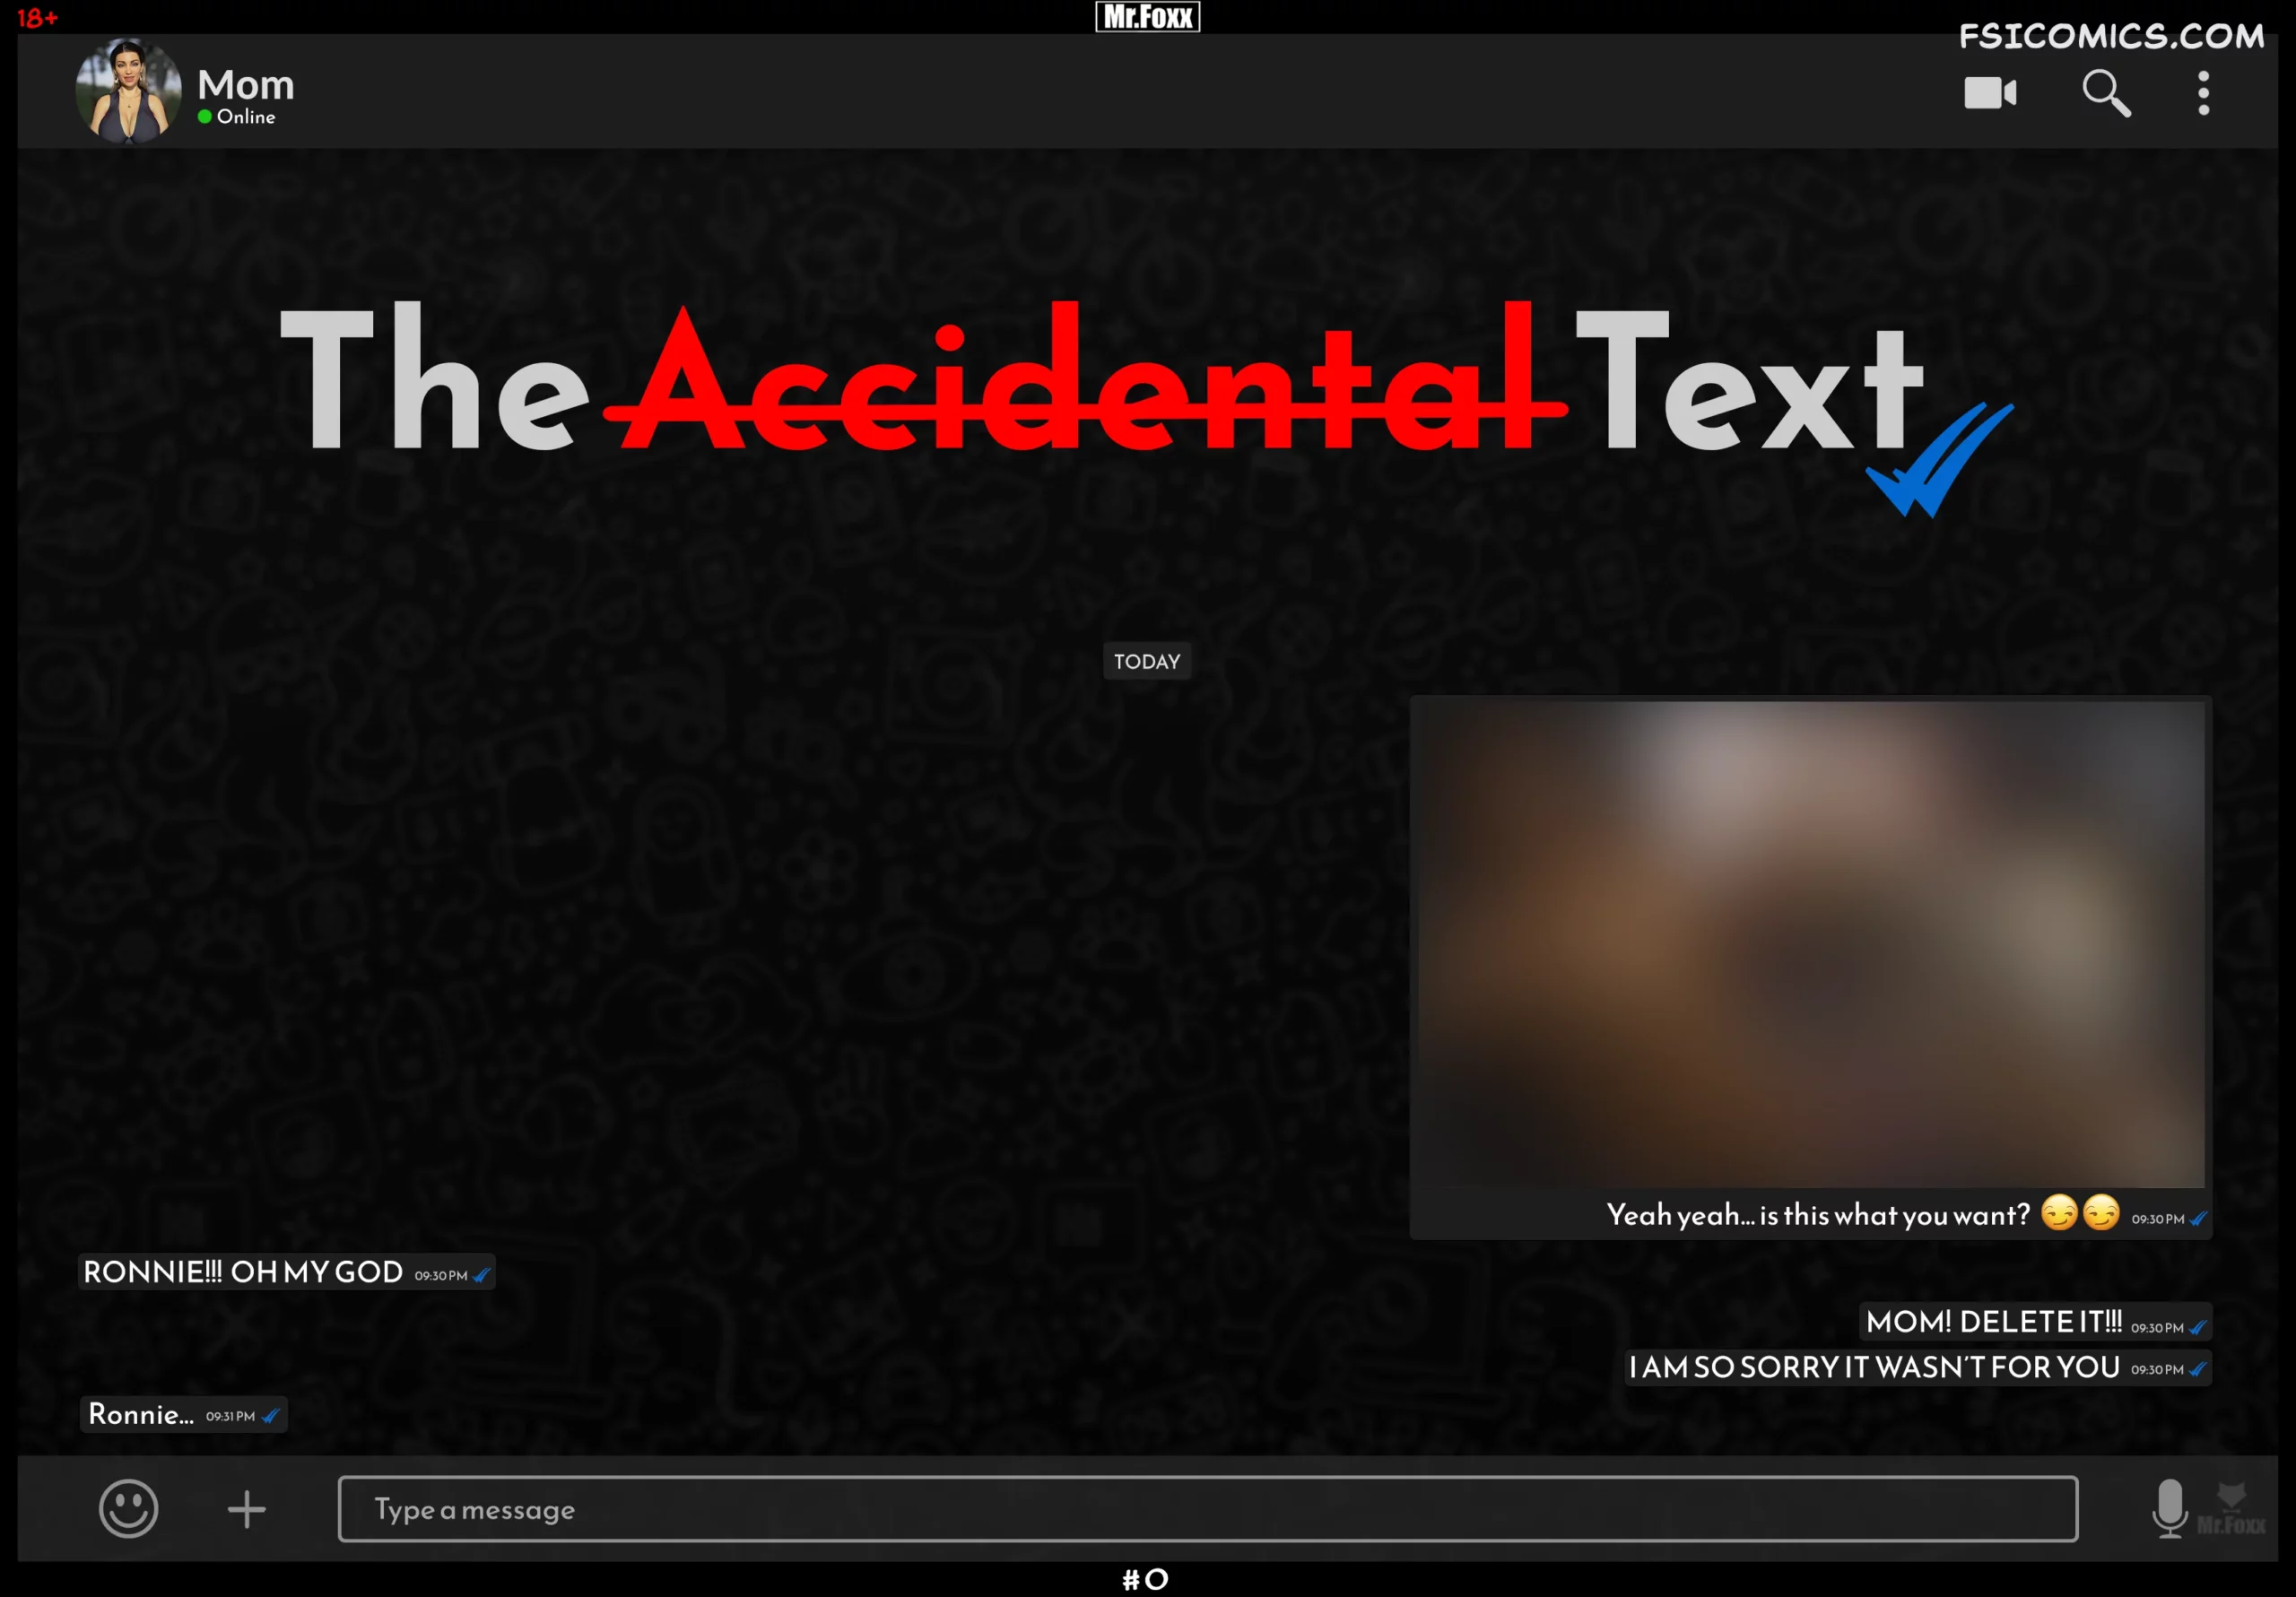 The Accidental Text - Mr.FOXX - 11 - FSIComics